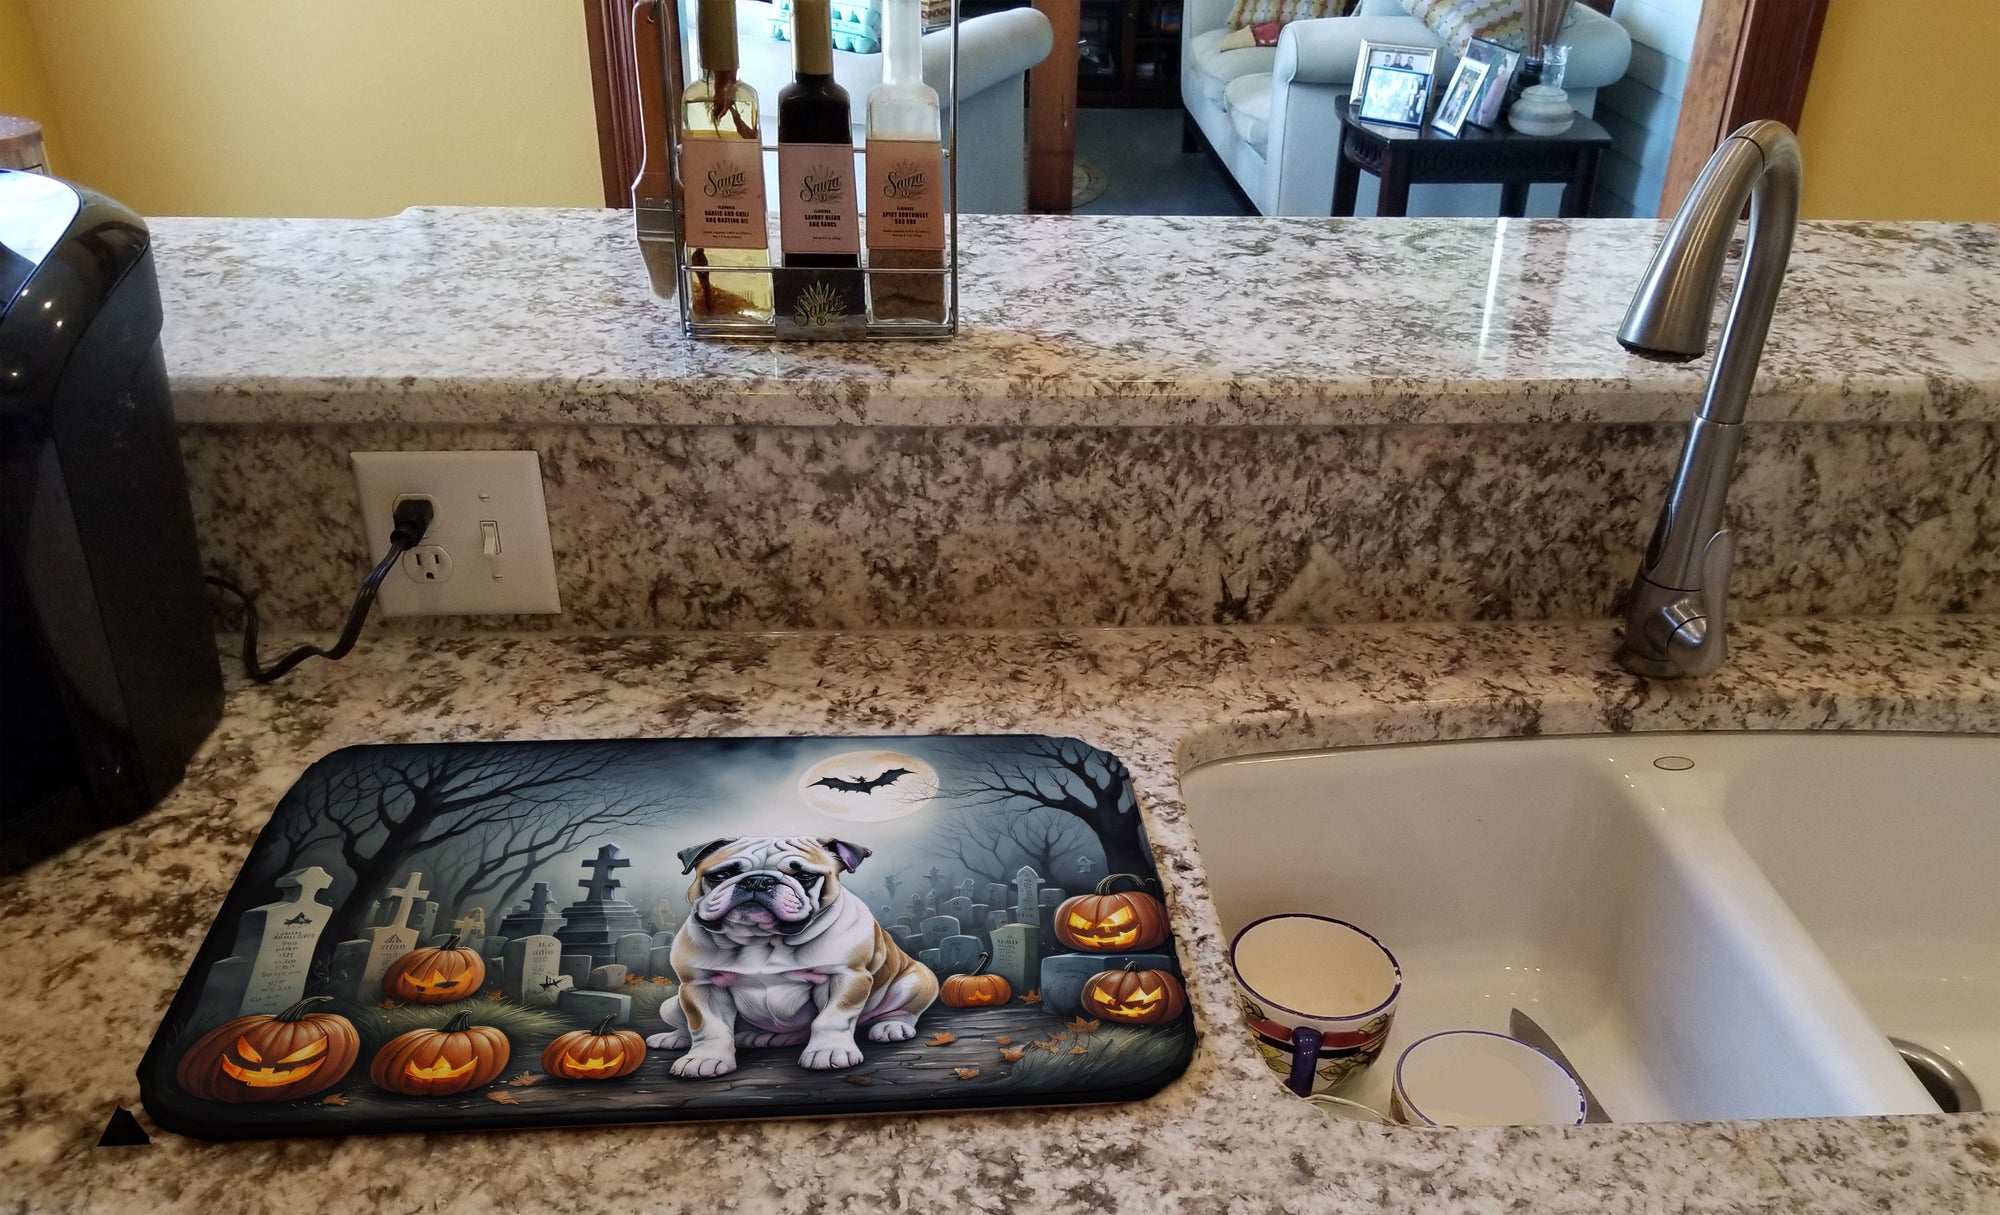 Buy this English Bulldog Spooky Halloween Dish Drying Mat